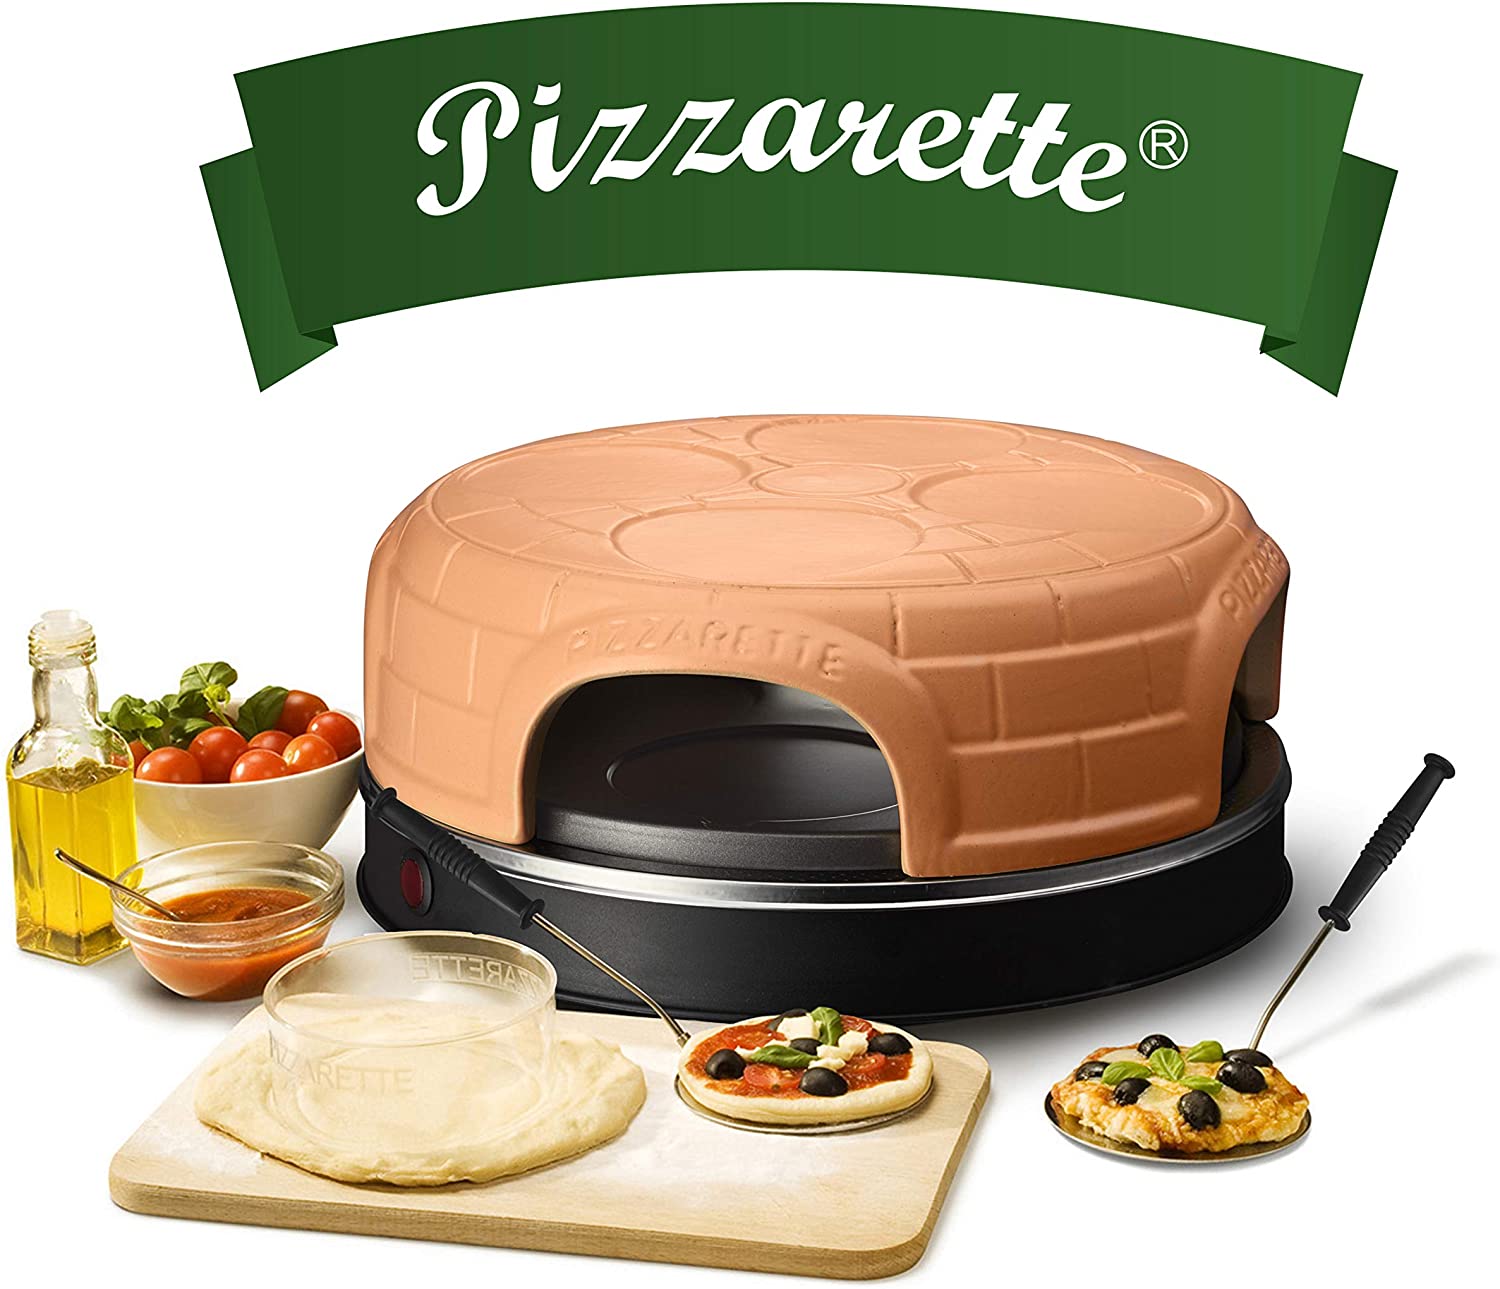 Emerio Pizza Oven, Pizzarette the Original, Handmade Terracotta Clay Cover, Patented Design, for Mini Pizza, Real Family Fun